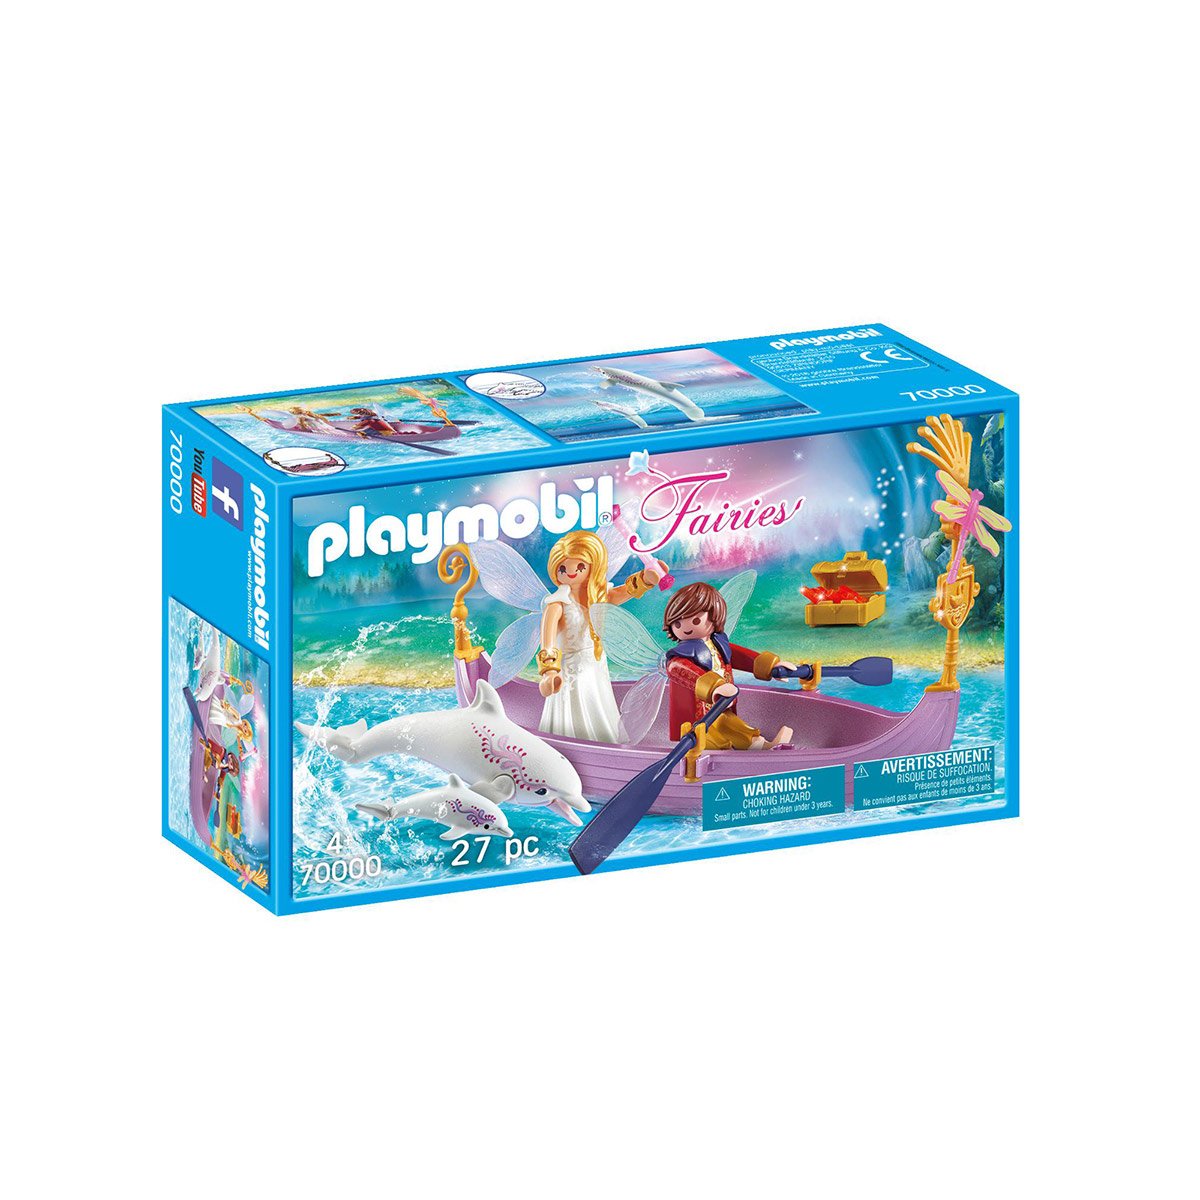 Edition limitée Playmobil Fairies 70000 Bateau romantique avec couple de fées